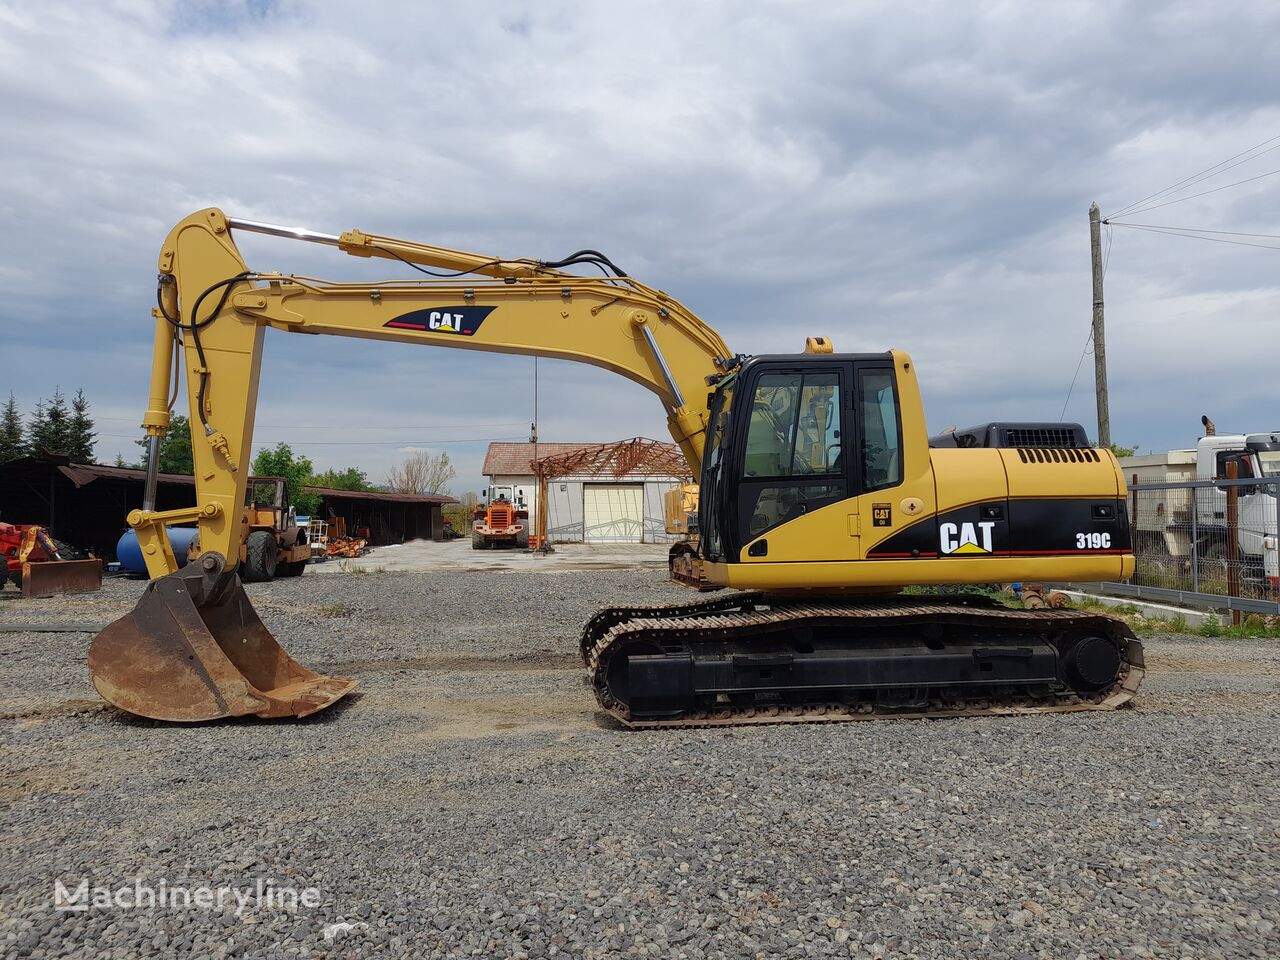 Caterpillar 319C tracked excavator